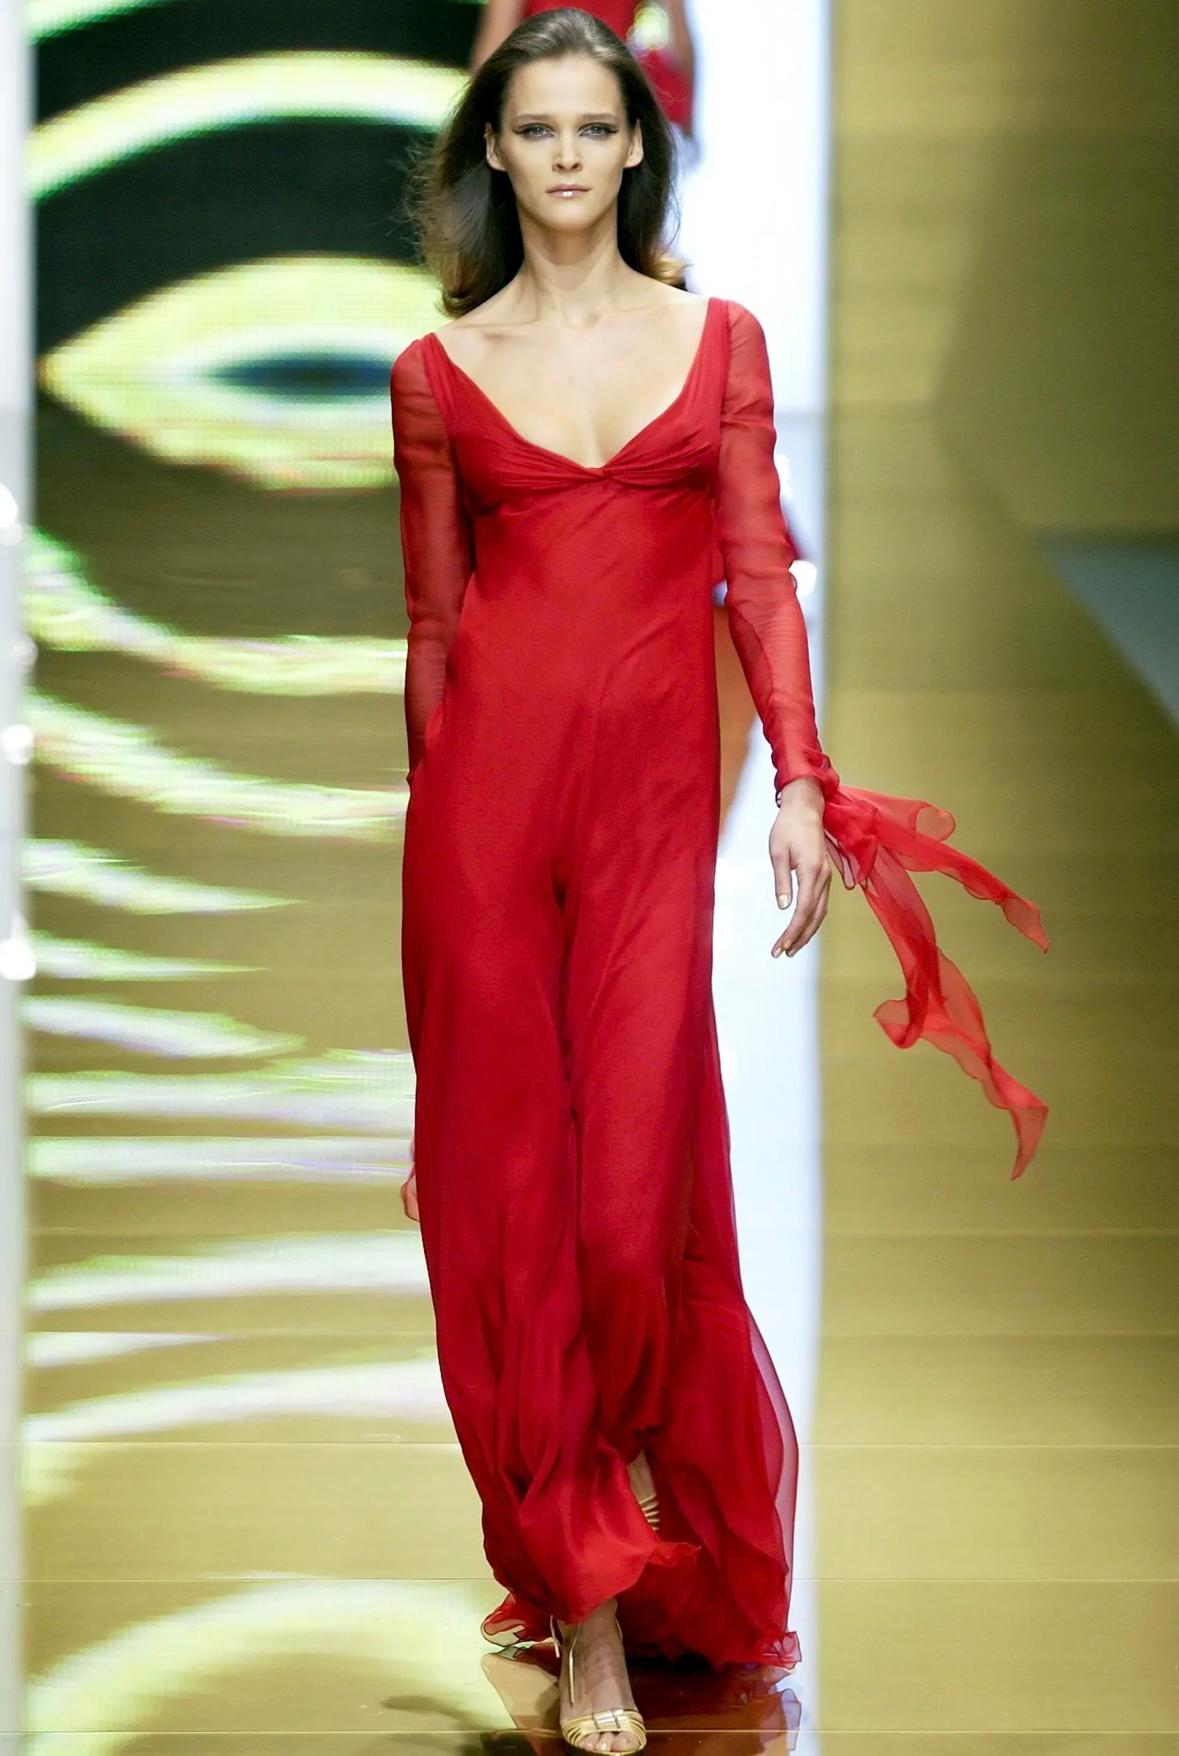 Valentino Garavani präsentiert ein auffälliges Abendkleid aus Chiffon, das er für seine Herbst/Winter-Kollektion 2002 entworfen hat. Das Kleid wurde als großes Finale der Laufstegpräsentation von Carmen Kass vorgestellt. Glamourös drapierte